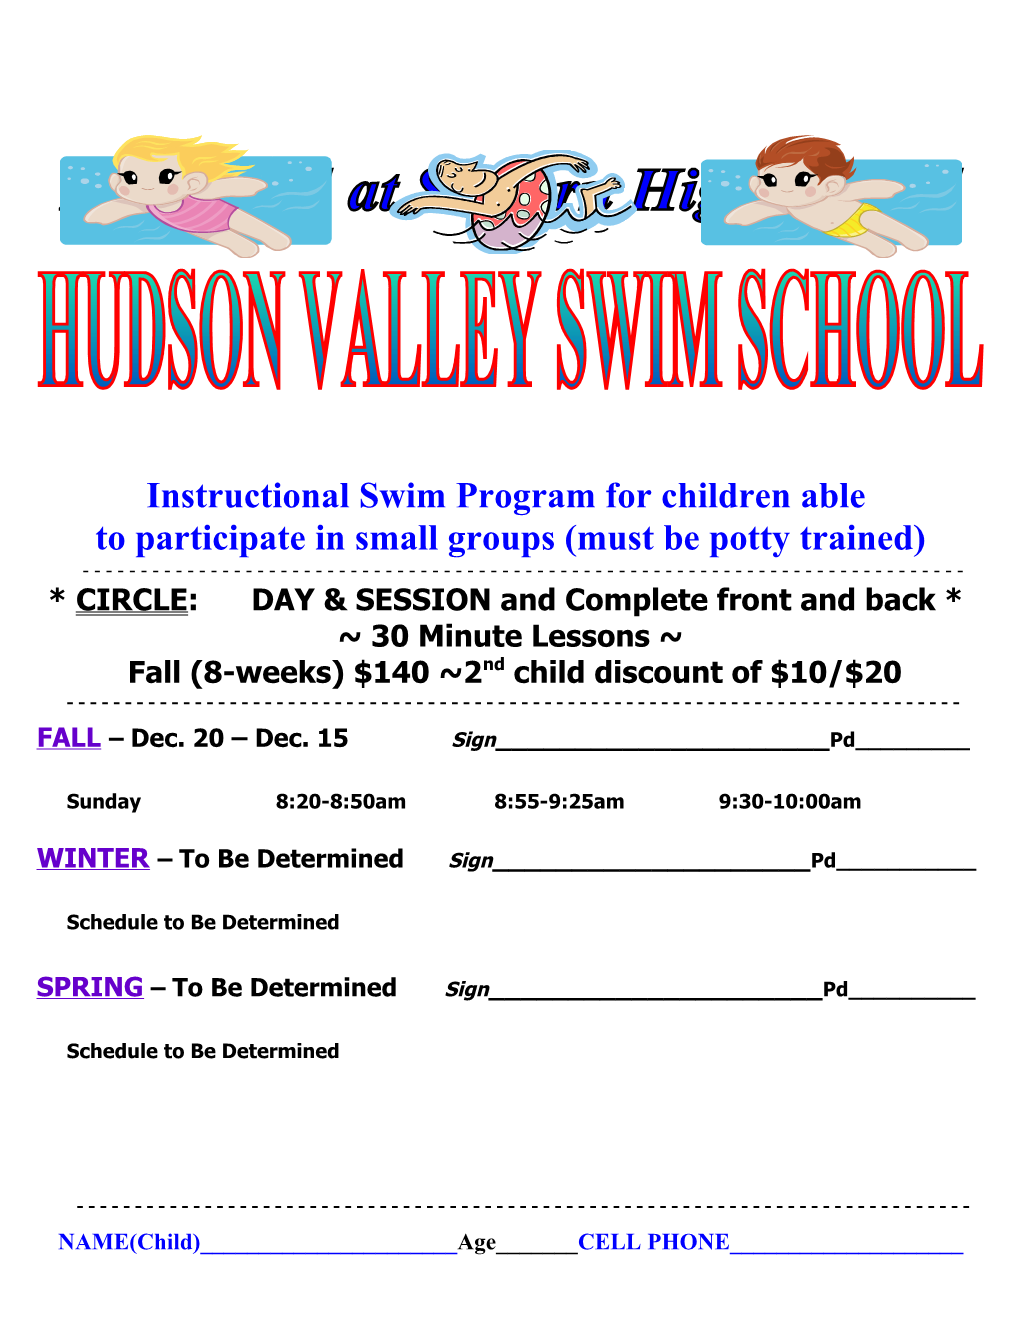 Instructional Swim Program for Children Able